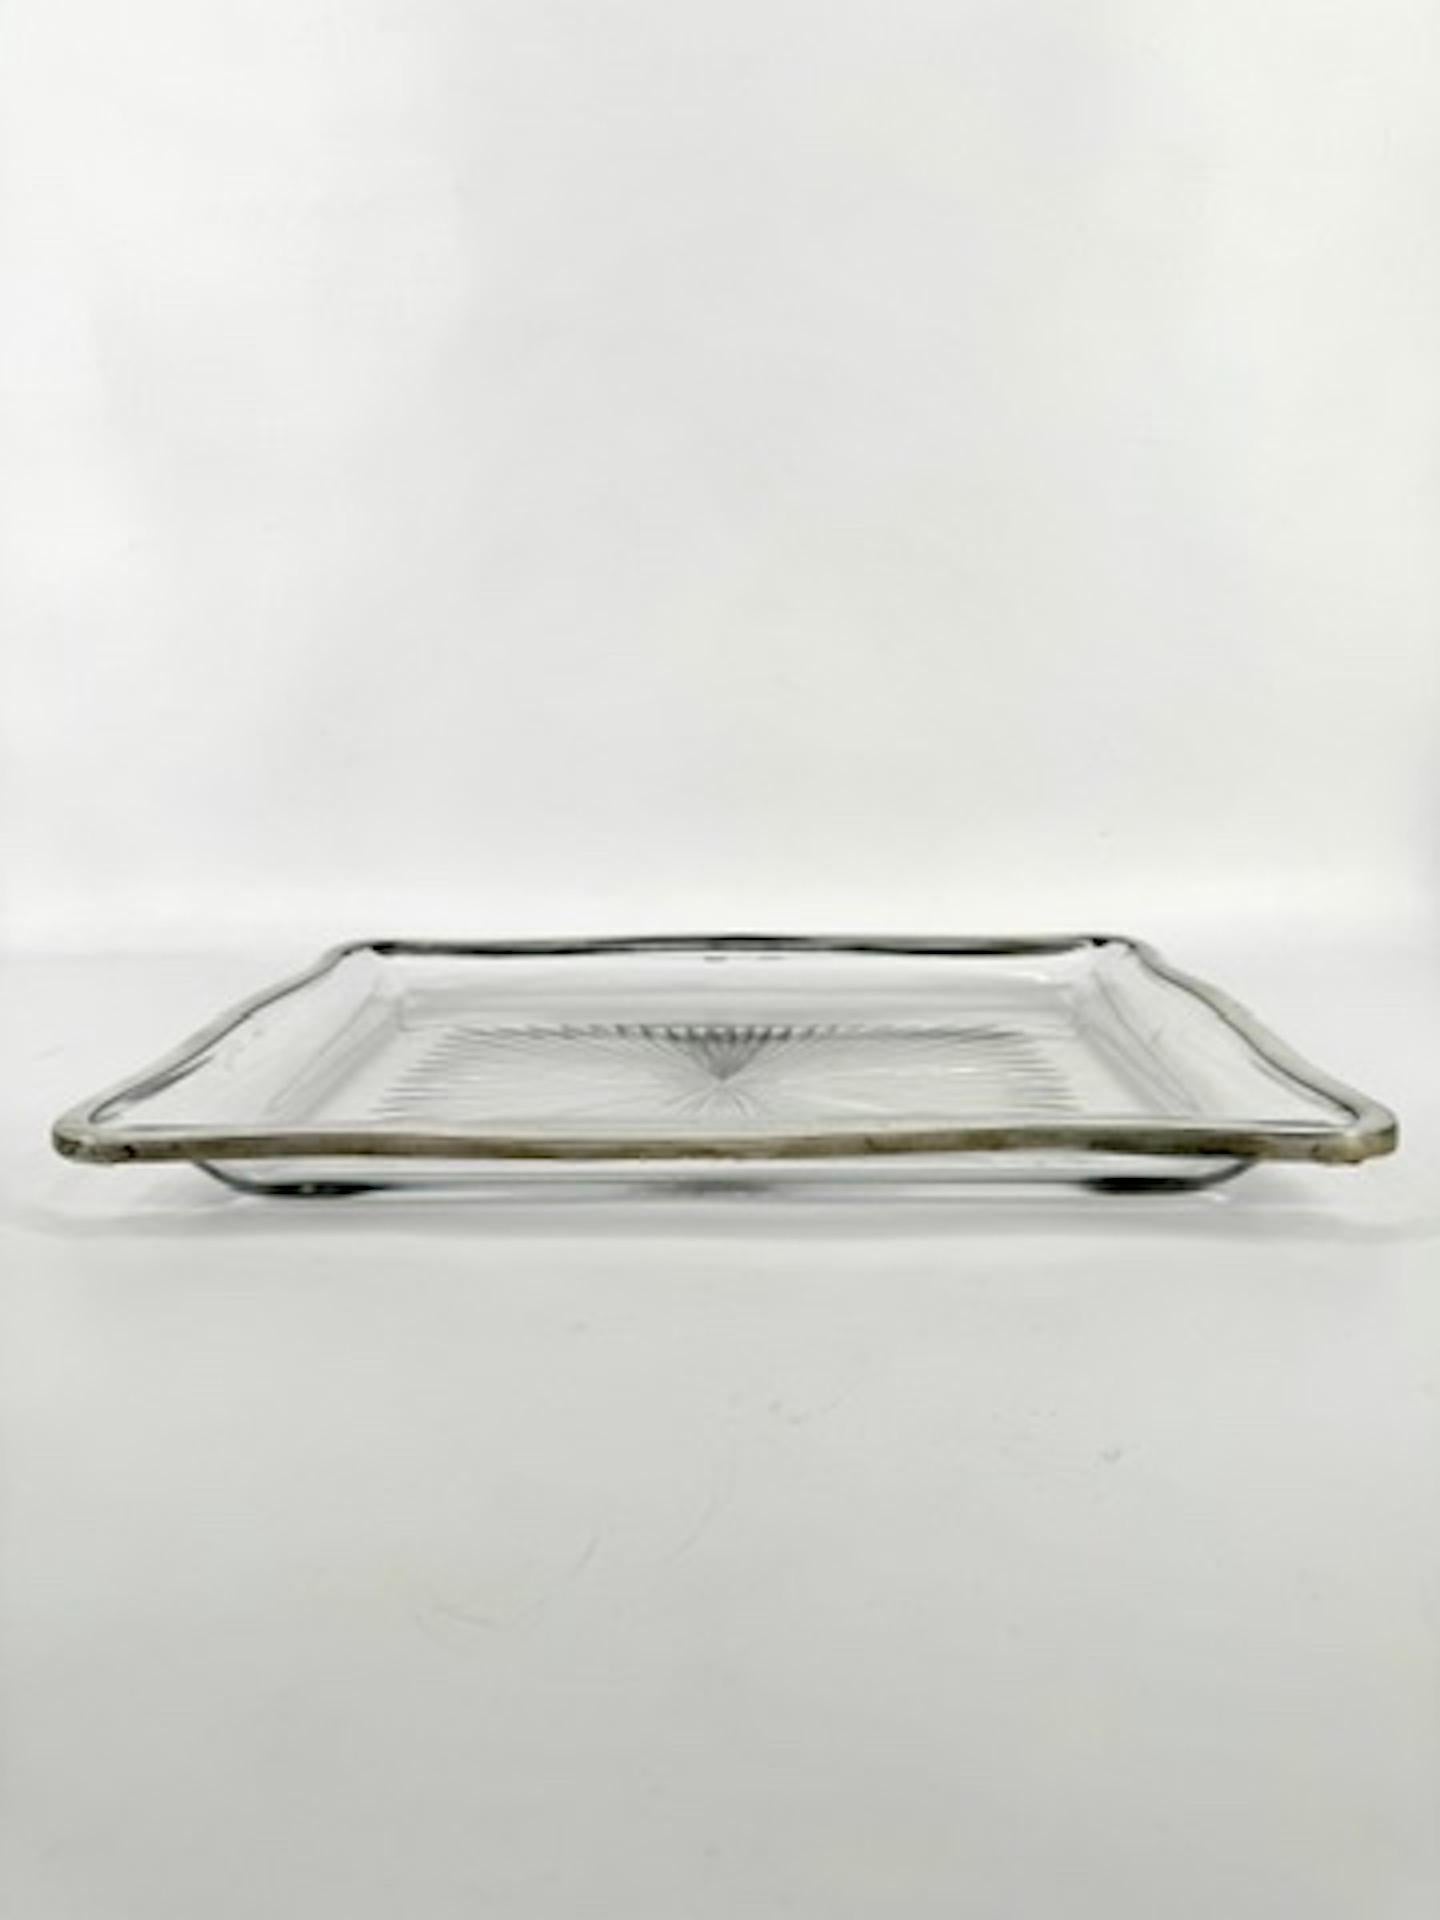 Elegant plateau en cristal français du XIXème siècle, aux formes profondes et rondes, monté avec un cerclage en argent. 

Ce rare plateau de Baccarat présente une forme d'étoile taillée dans le cristal du fond.

Les quatre côtés du plateau sont